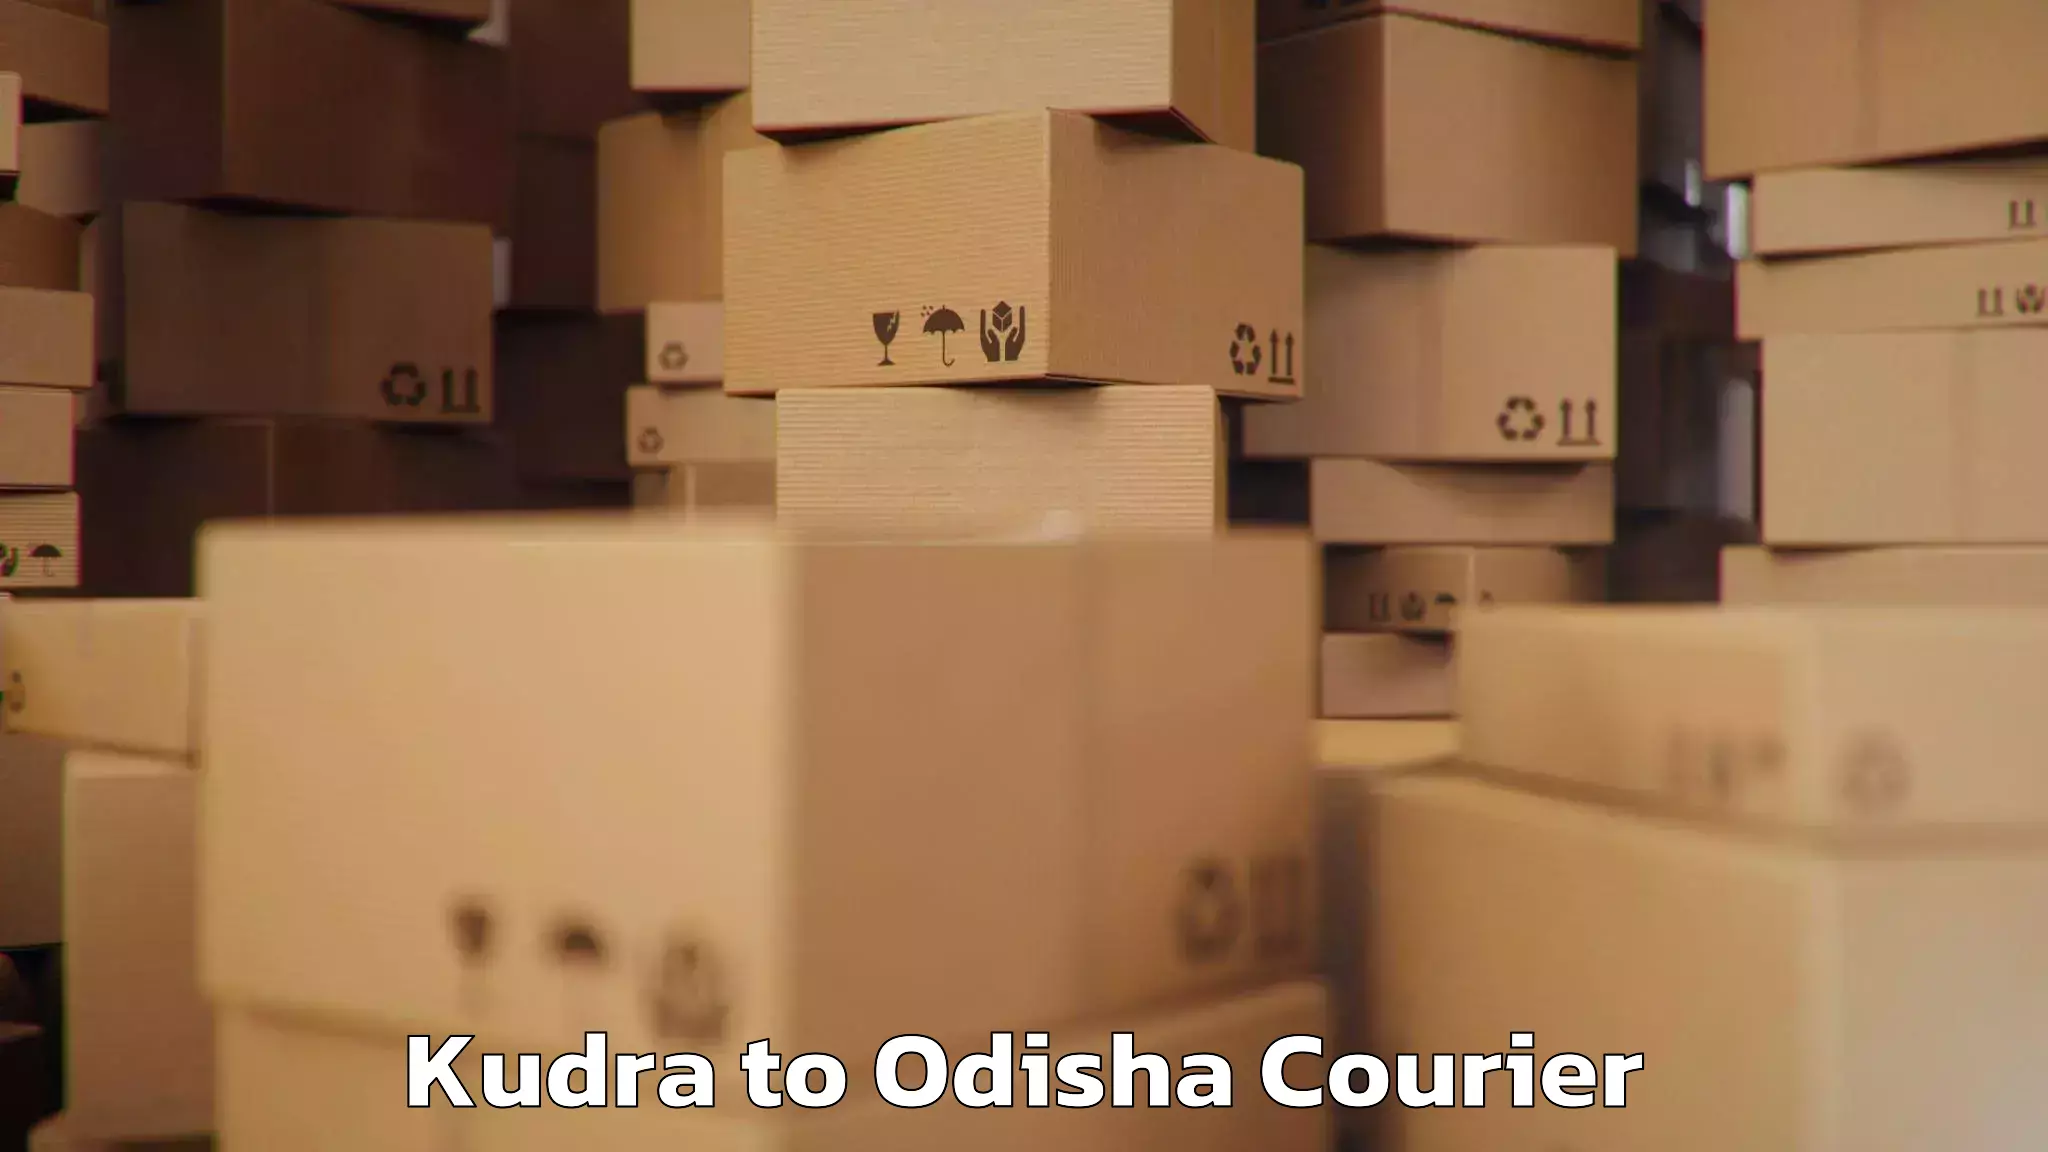 Baggage transport scheduler Kudra to Odisha